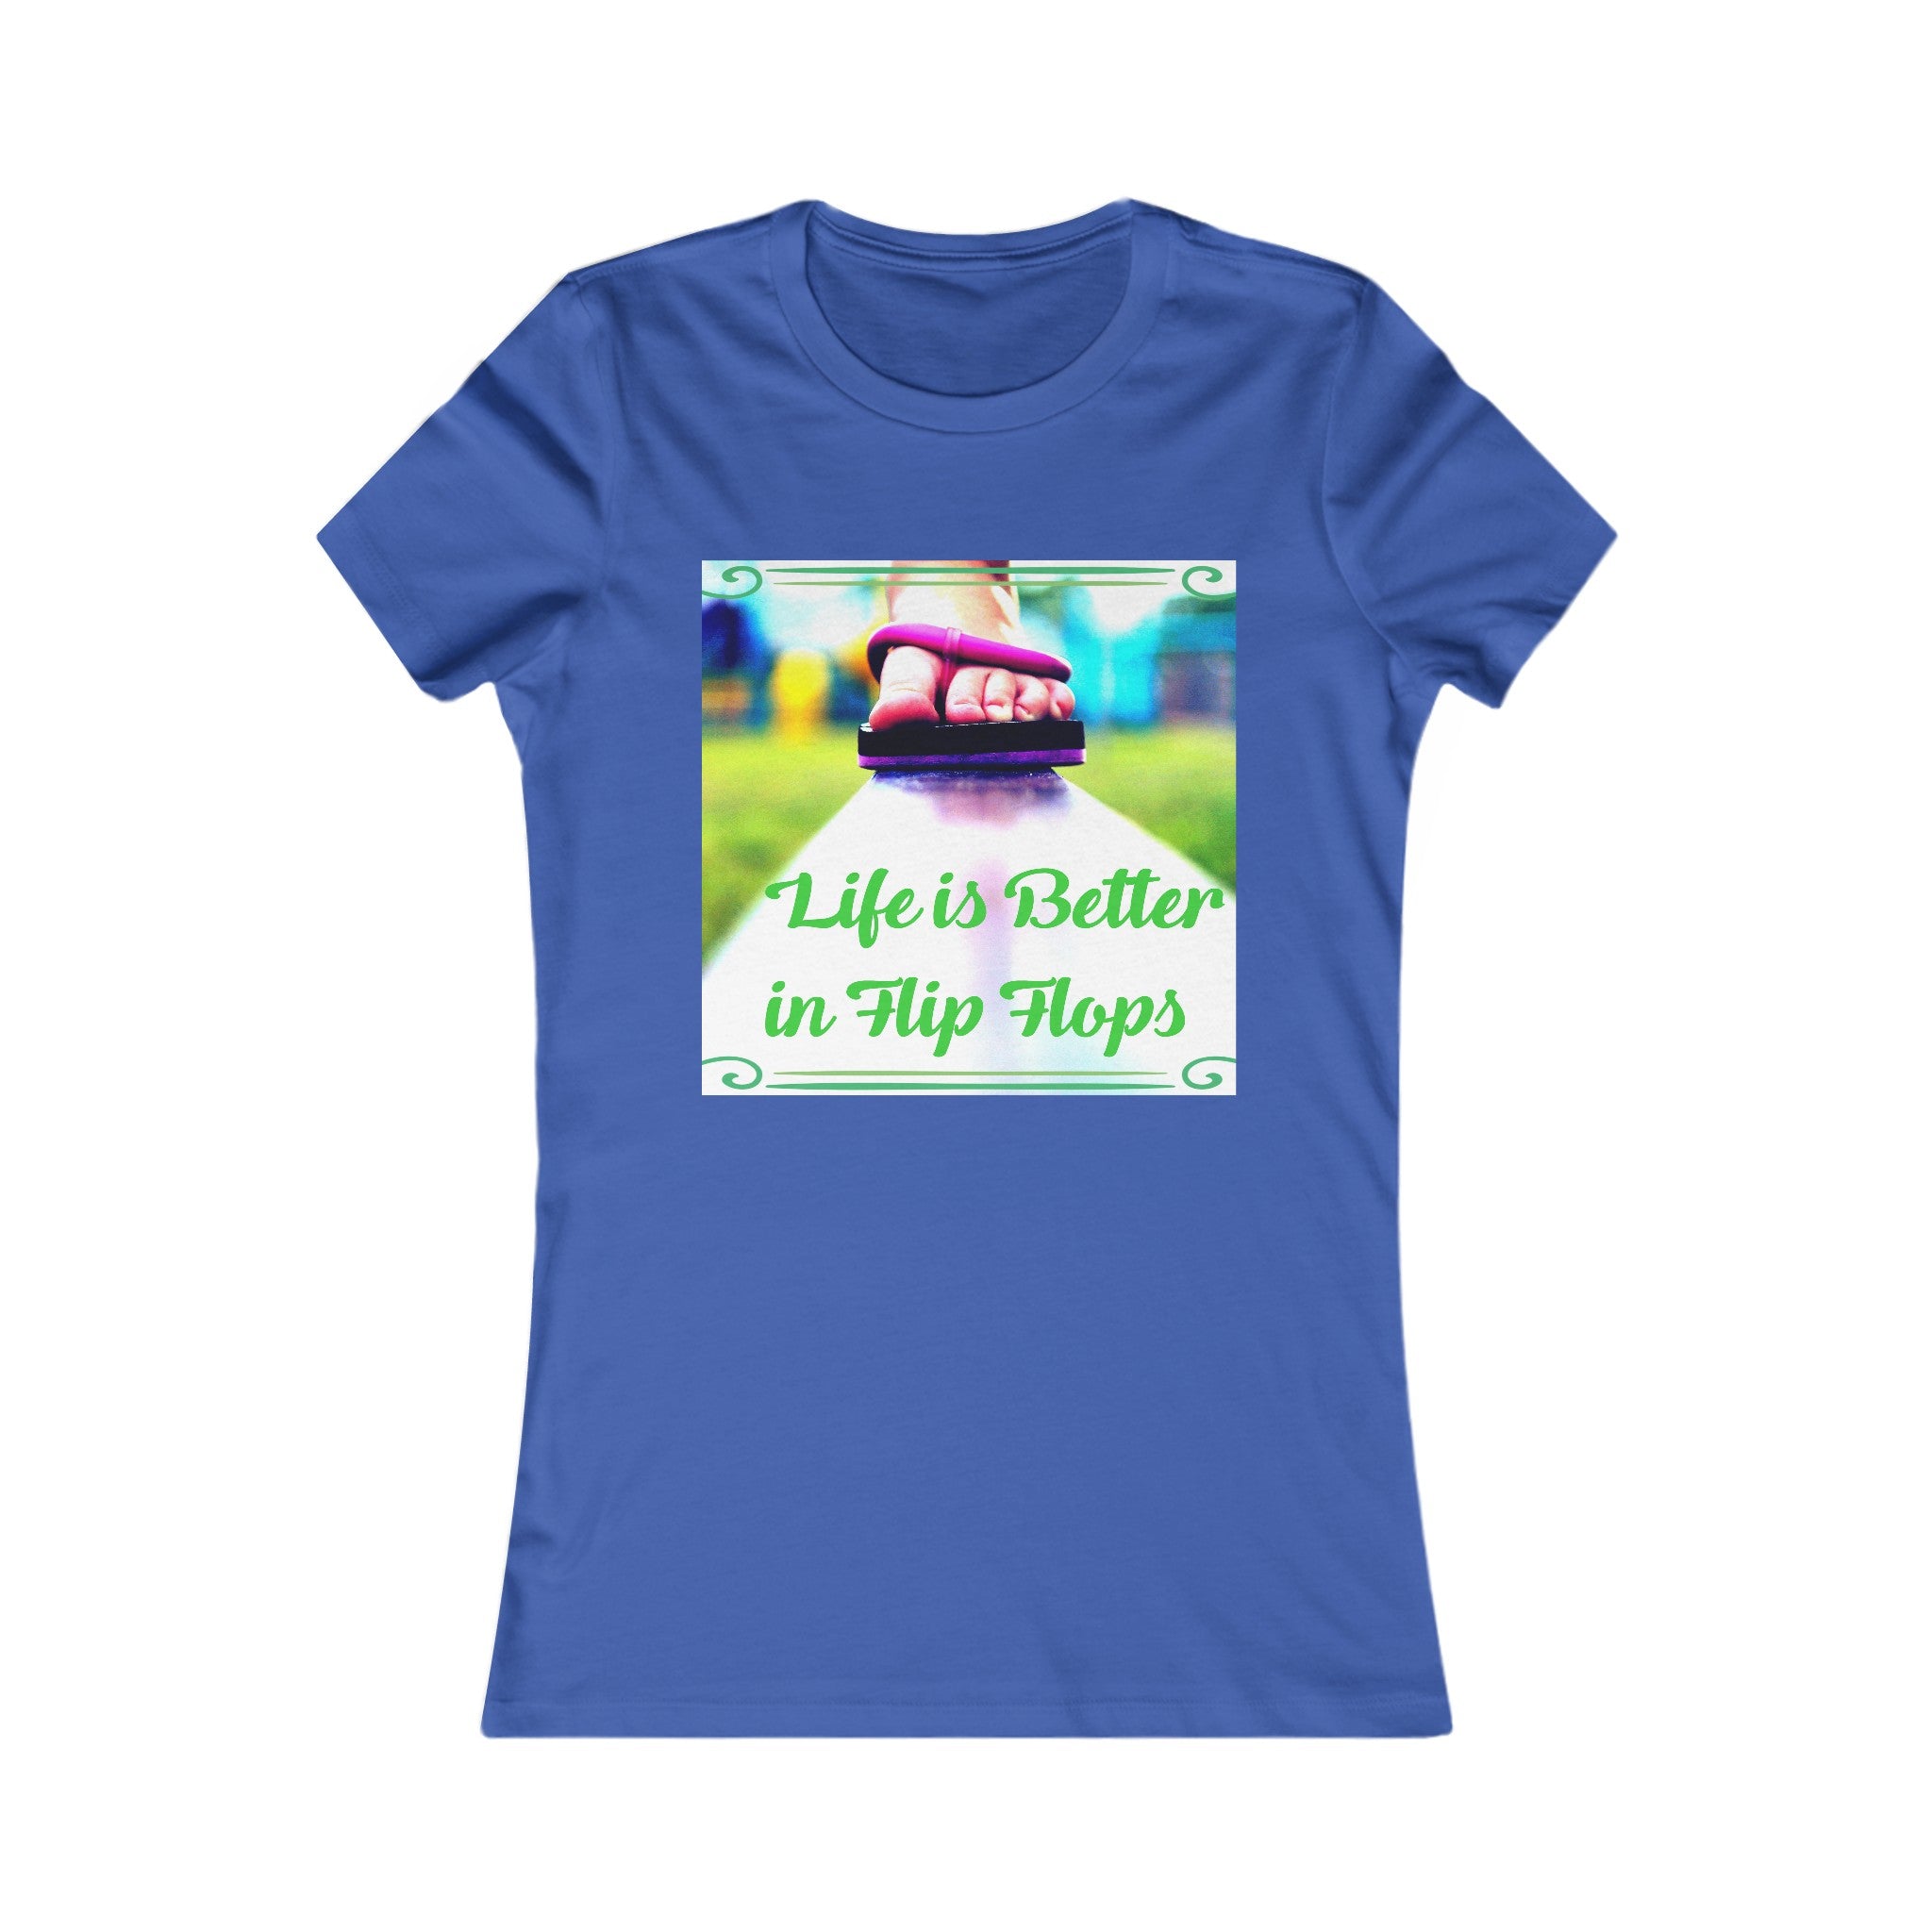 Life is Better in Flip Flops Women's Graphic T-shirt